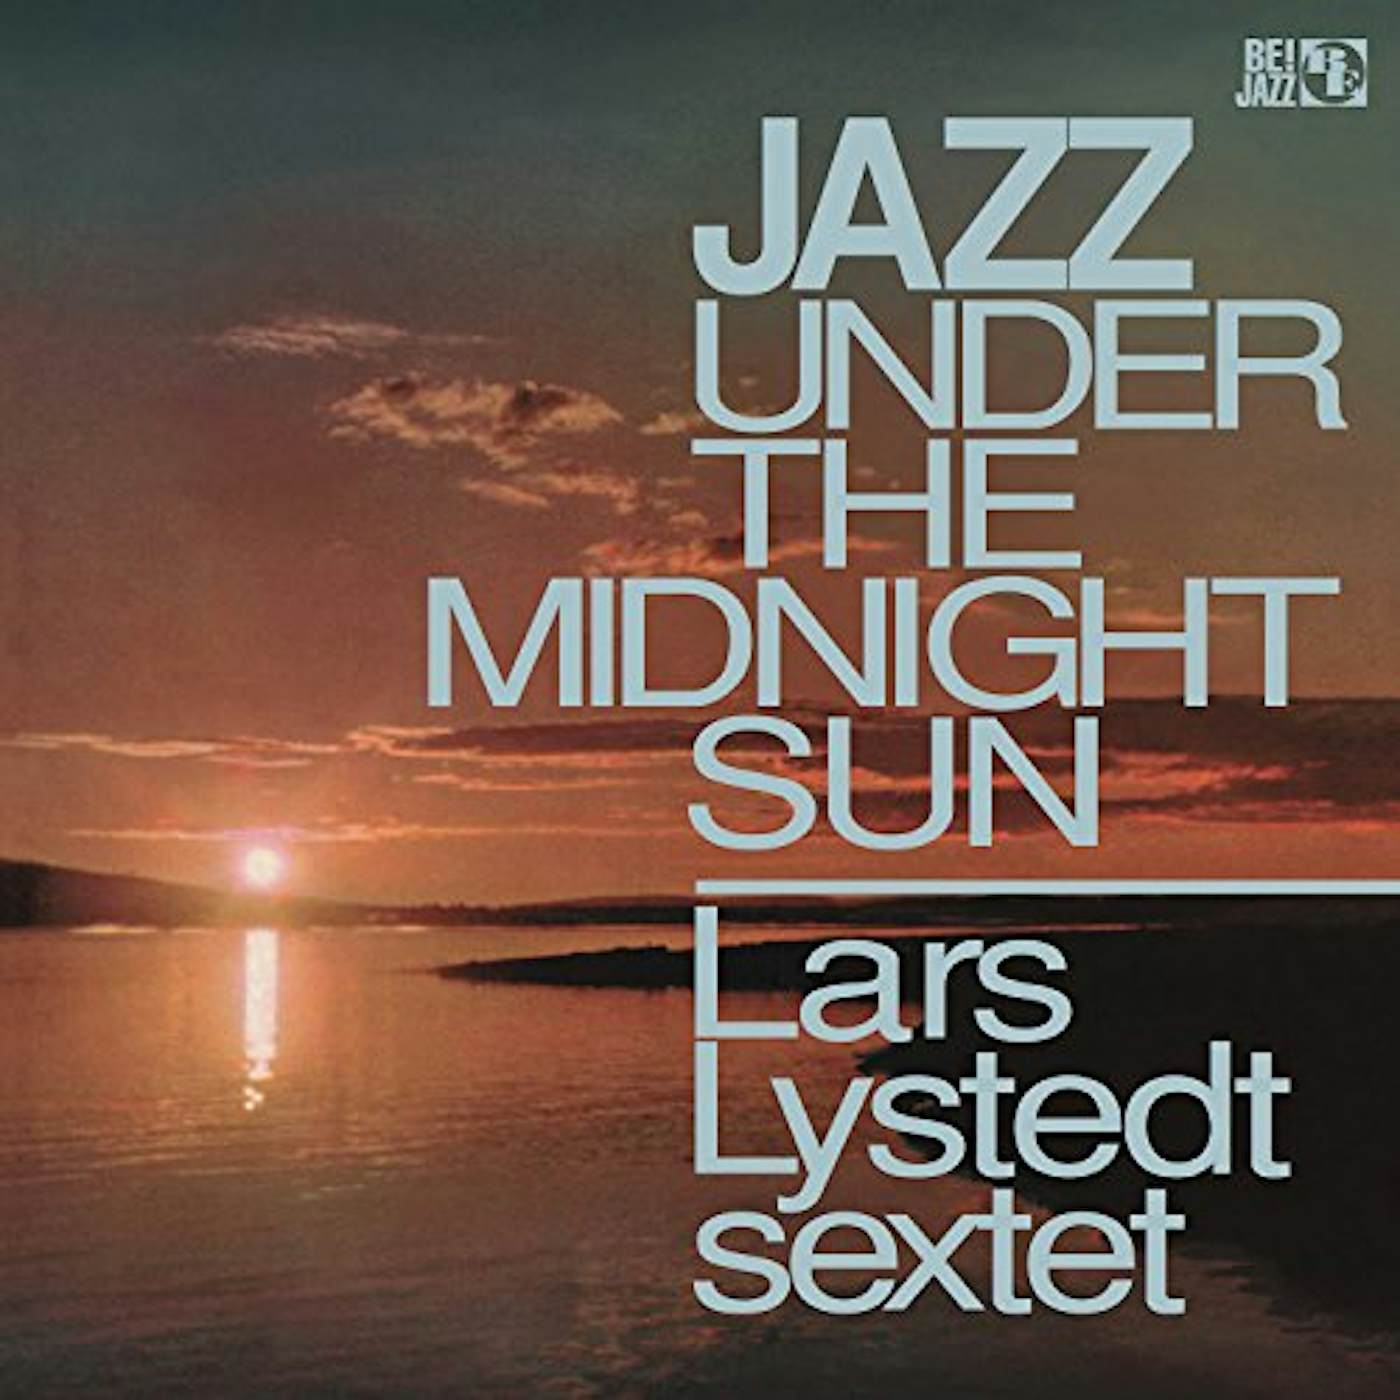 Lars Lystedt Sextet Jazz Under The Midnight Sun Vinyl Record